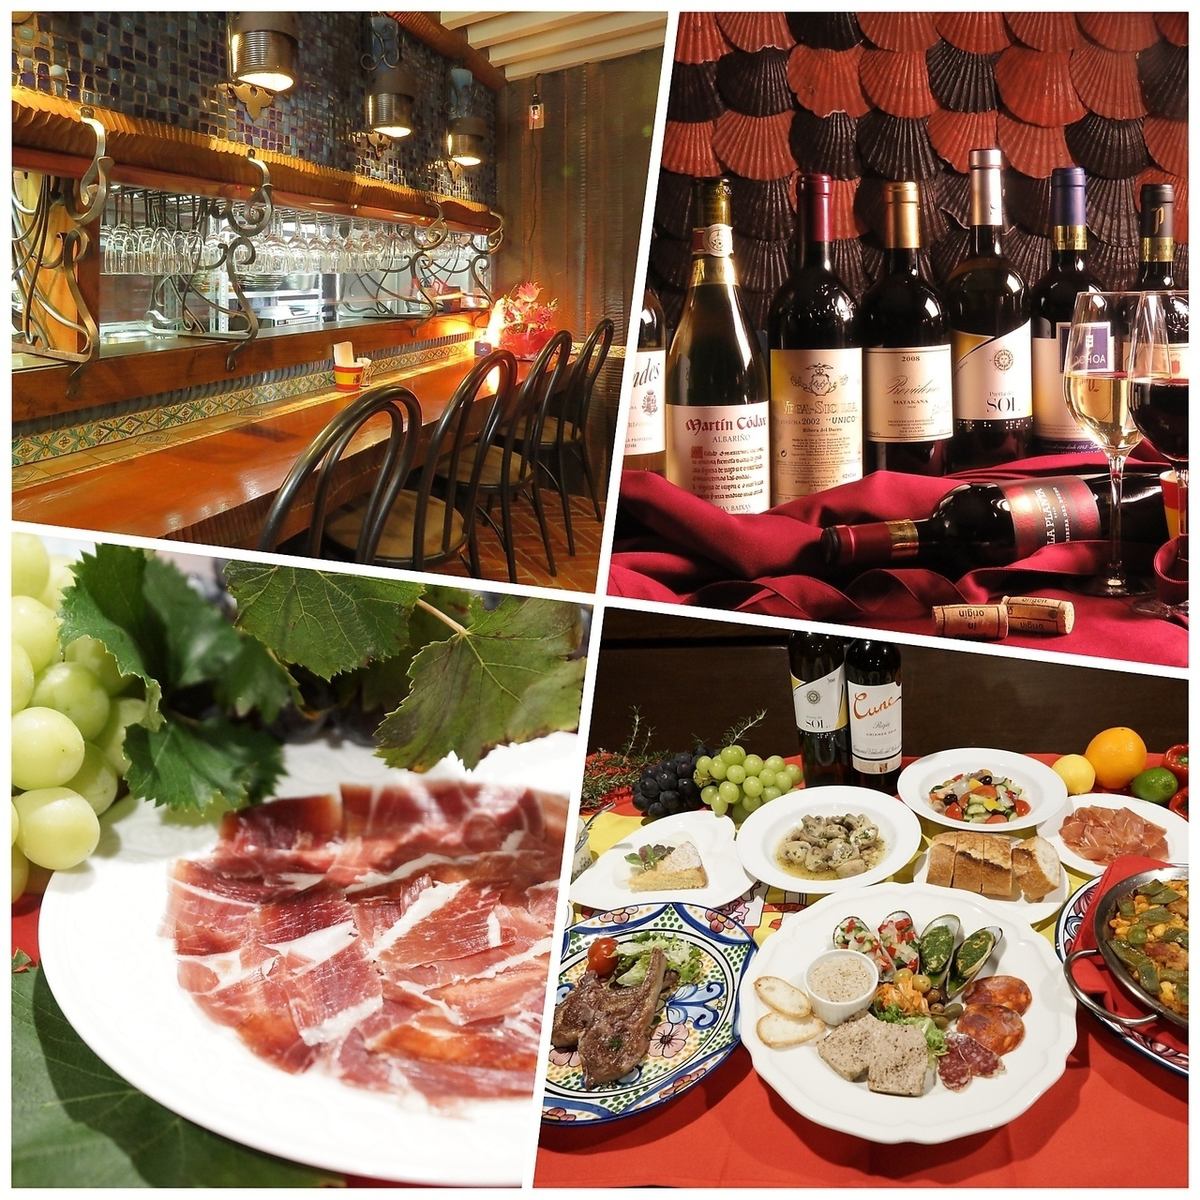 스페인 스타일의 점내에서 맛있는 스페인 요리와 와인을 즐길 수있는 가게.